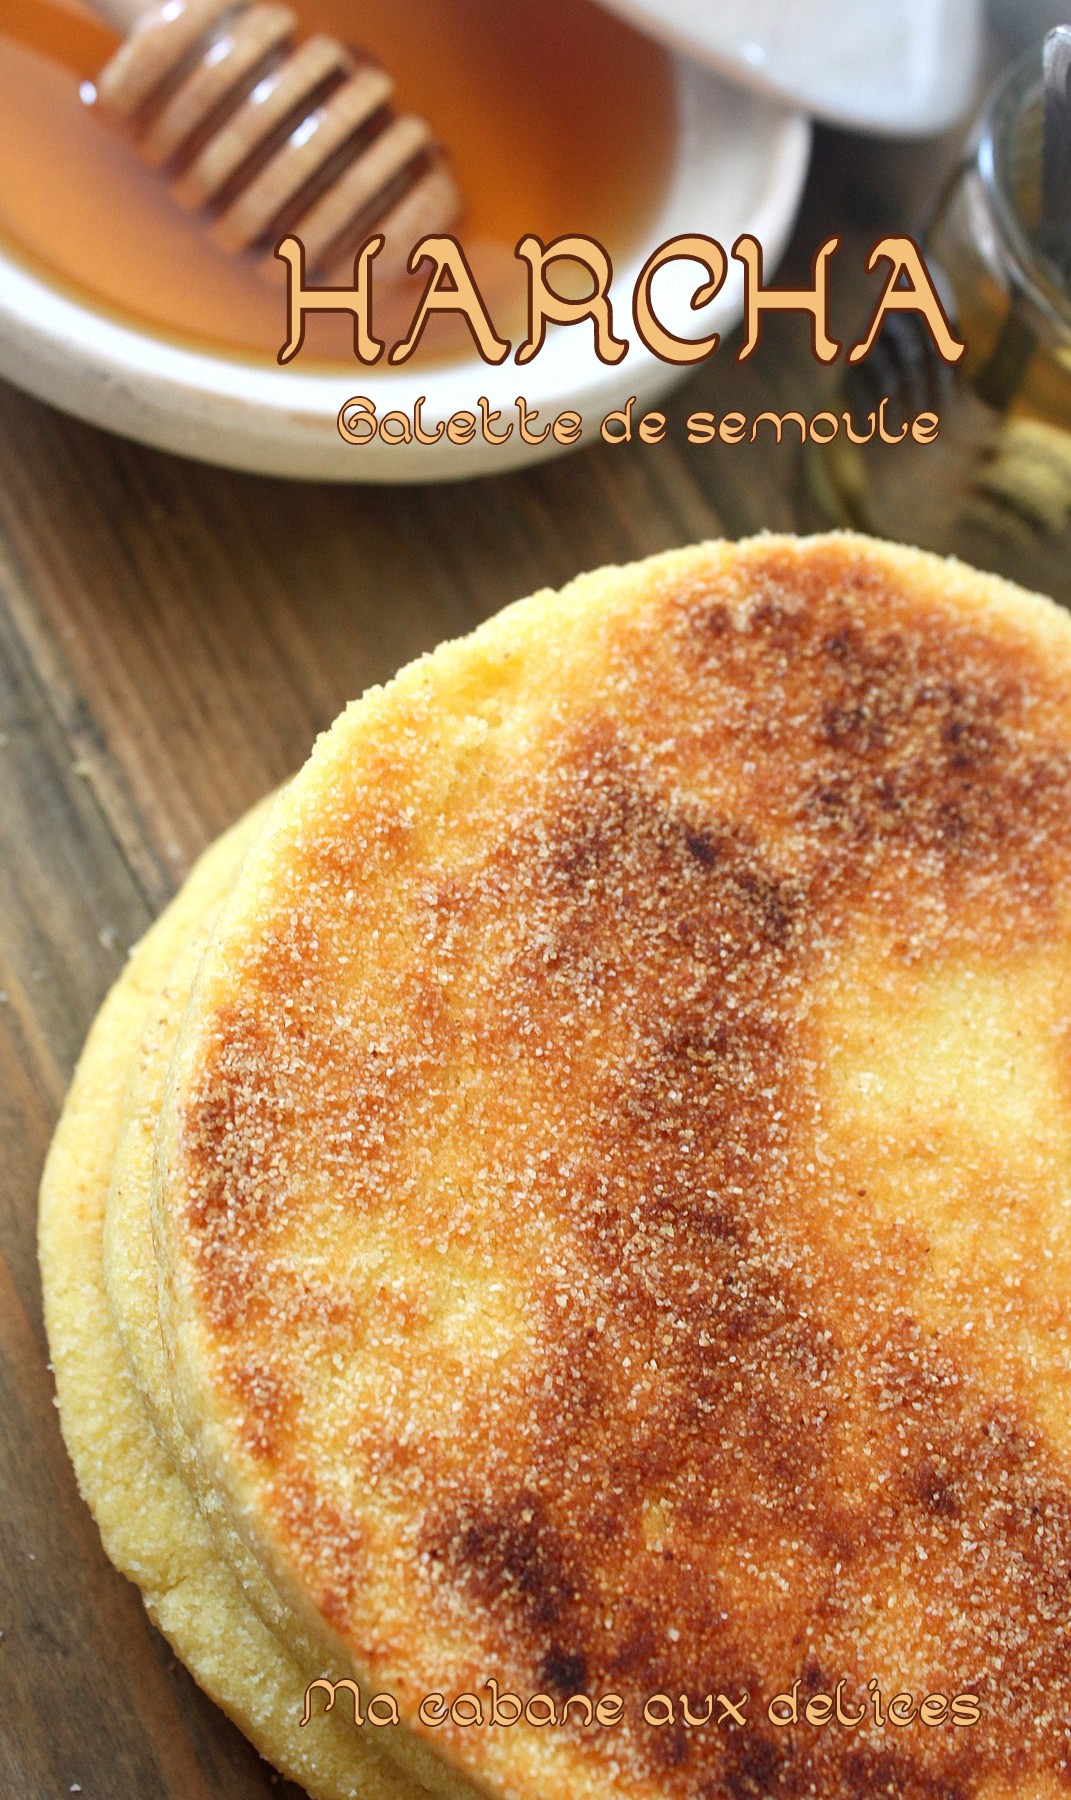 Harcha galette de semoule marocaine | La cuisine de Djouza